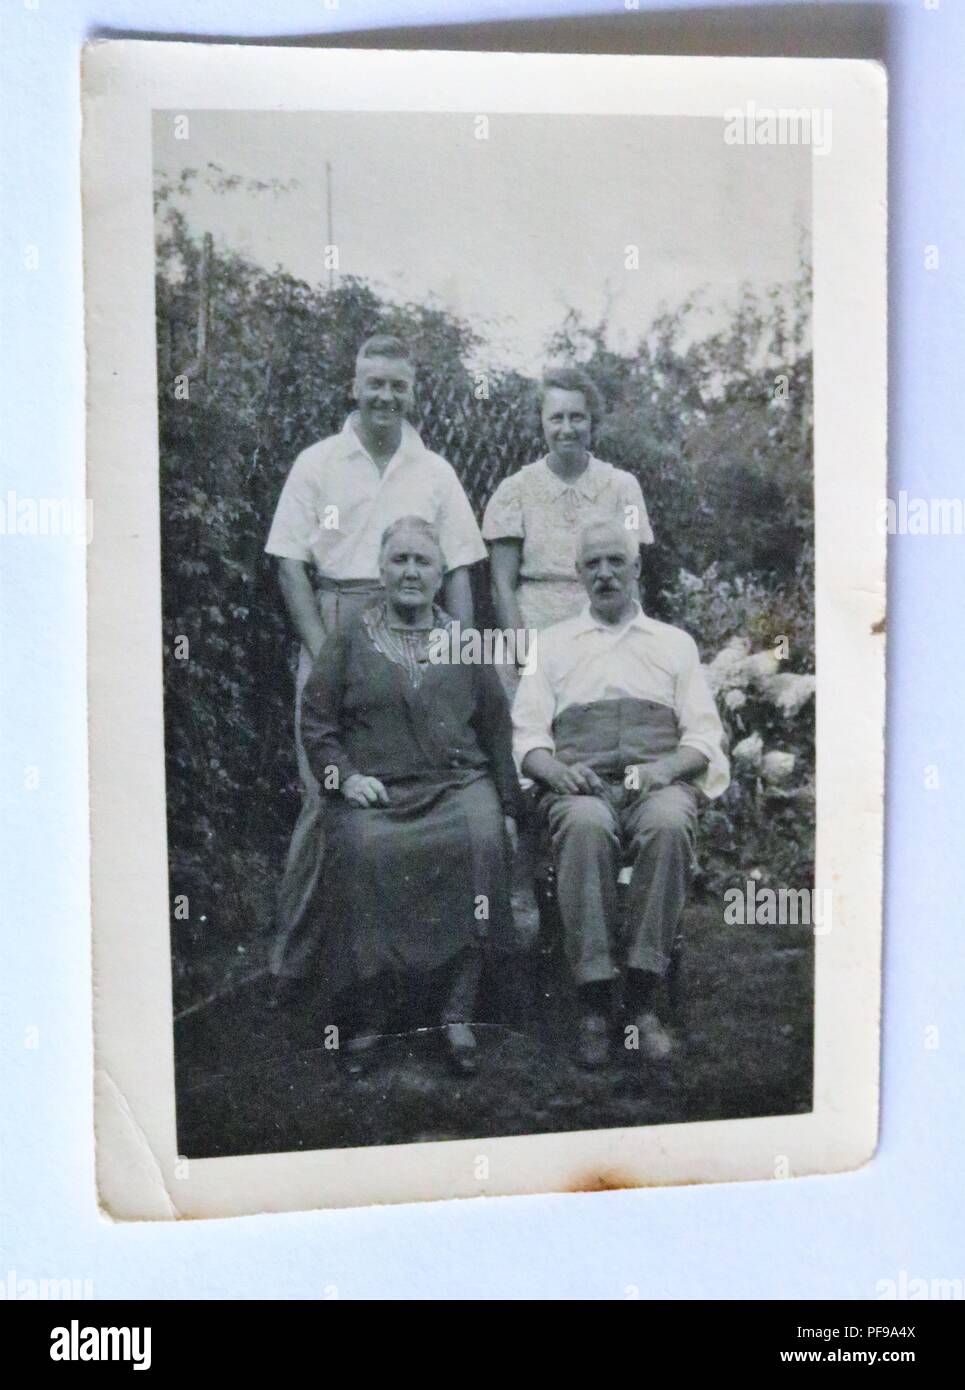 L'histoire sociale - Noir et blanc photographie ancienne montrant quatre personnes d'âge moyen dans un jardin Banque D'Images